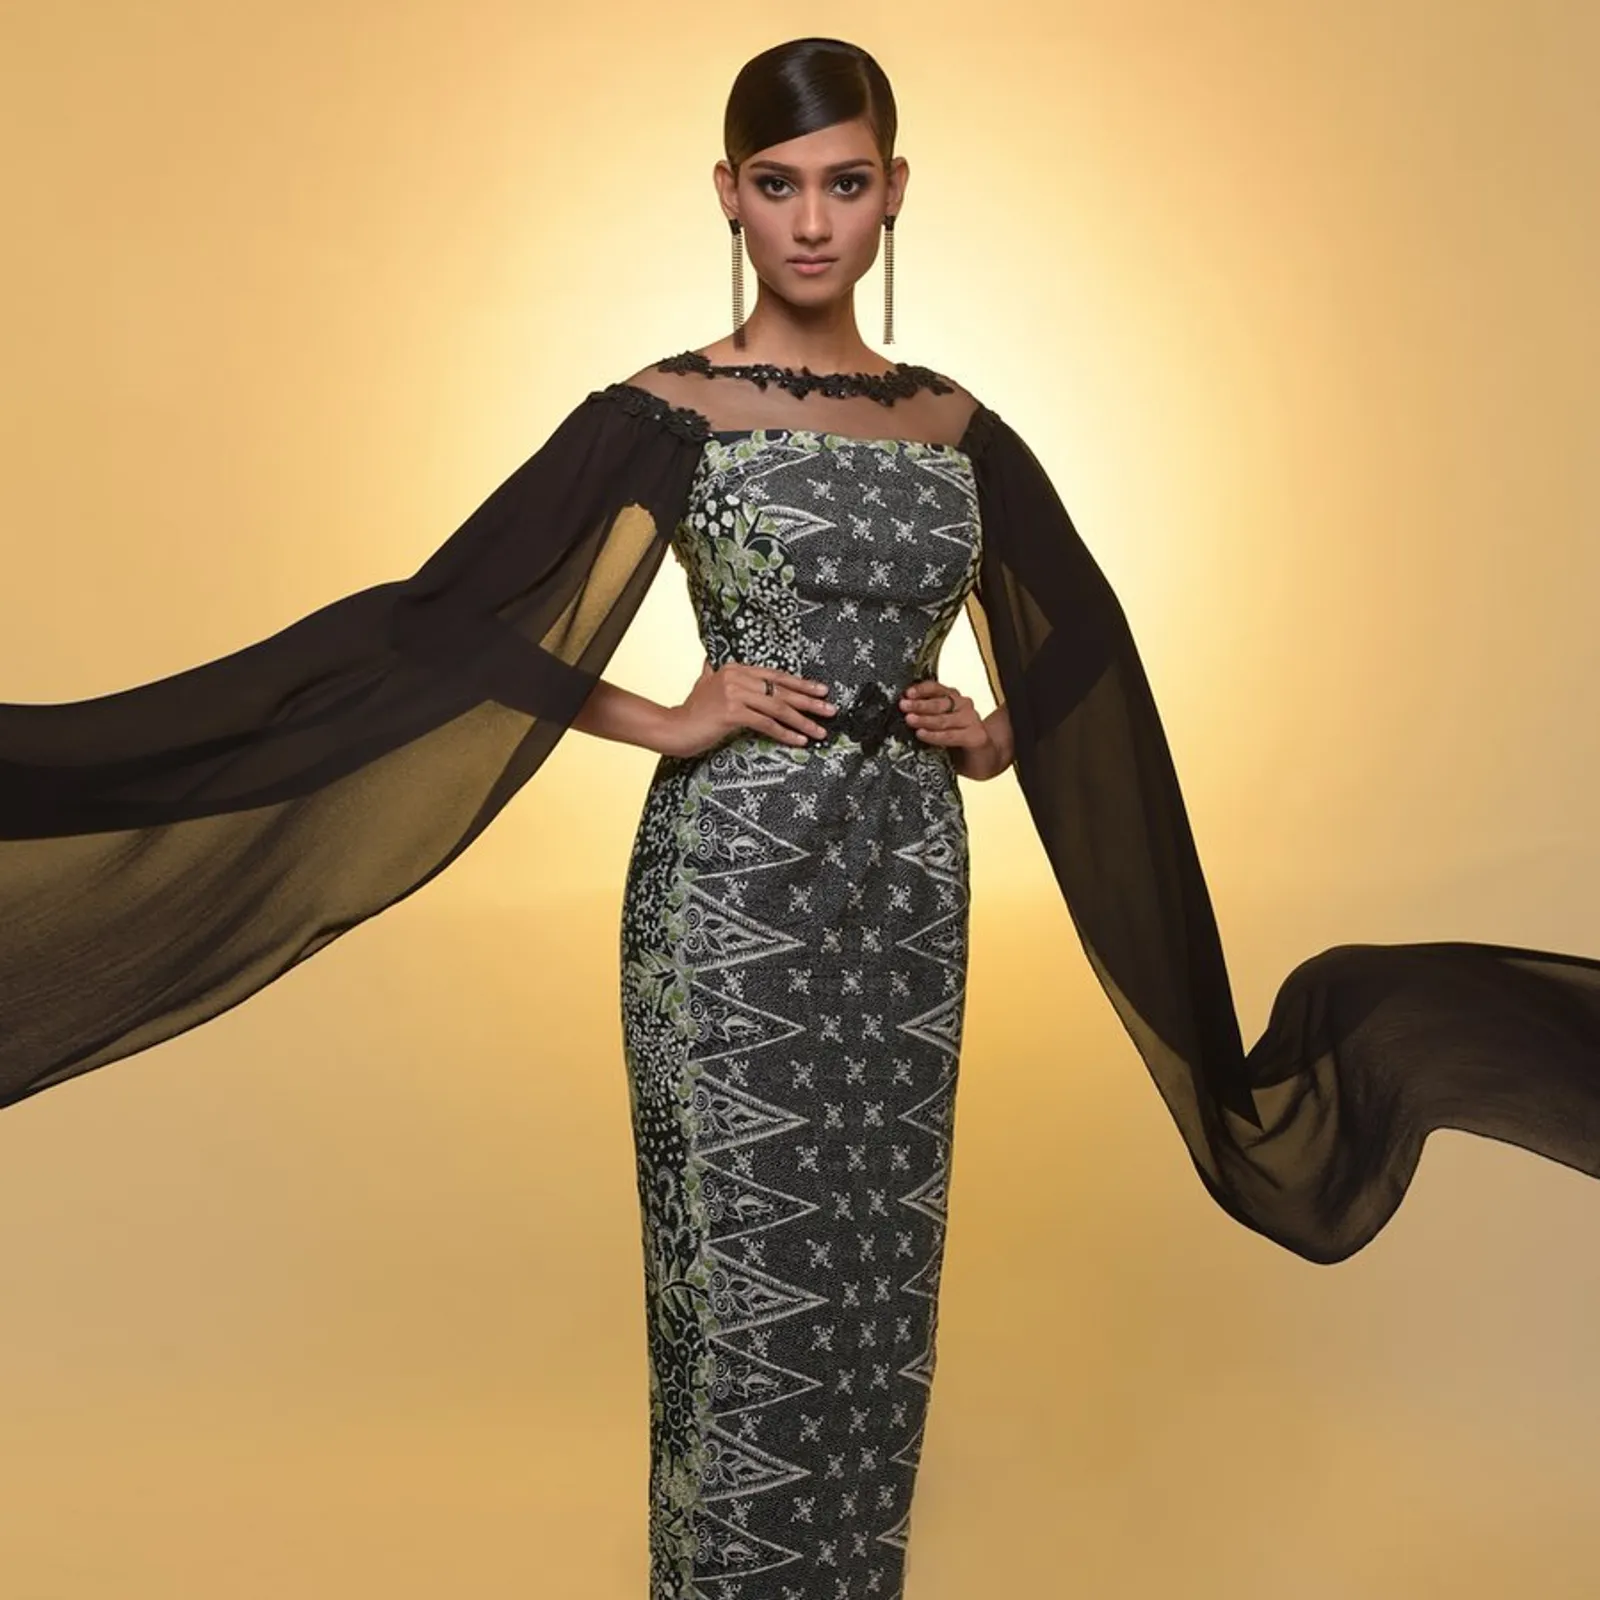 Gaya Asli Lavanya Sivaji, Miss World Malaysia yang Viral karena Batik